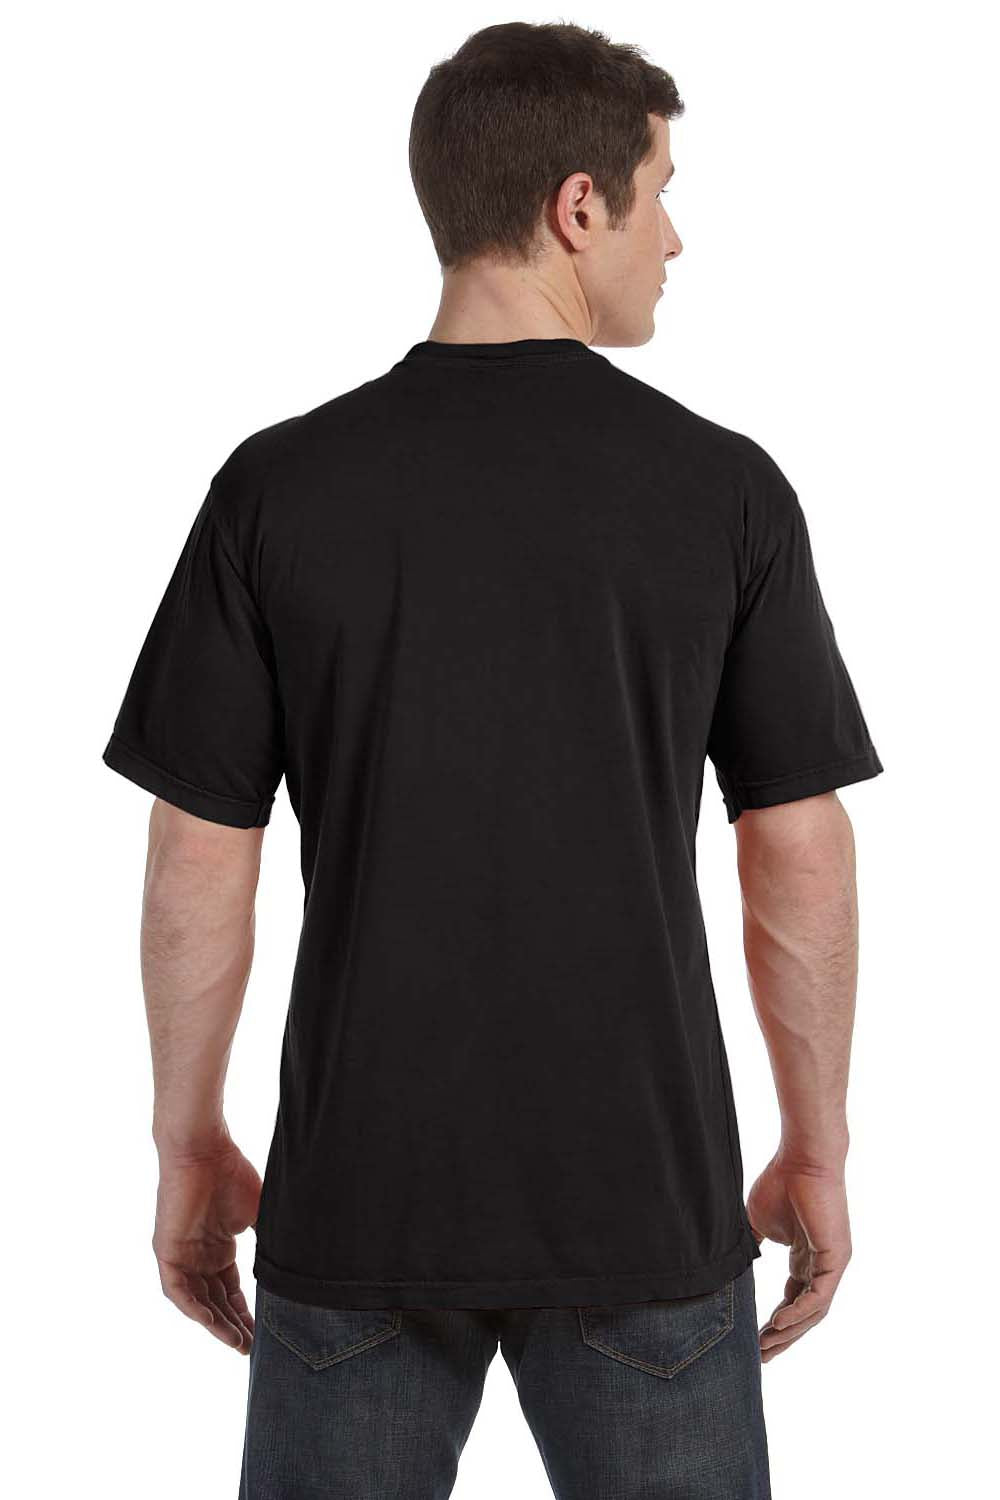 Comfort Colors C4017 Mens Short Sleeve Crewneck T-Shirt Black Back